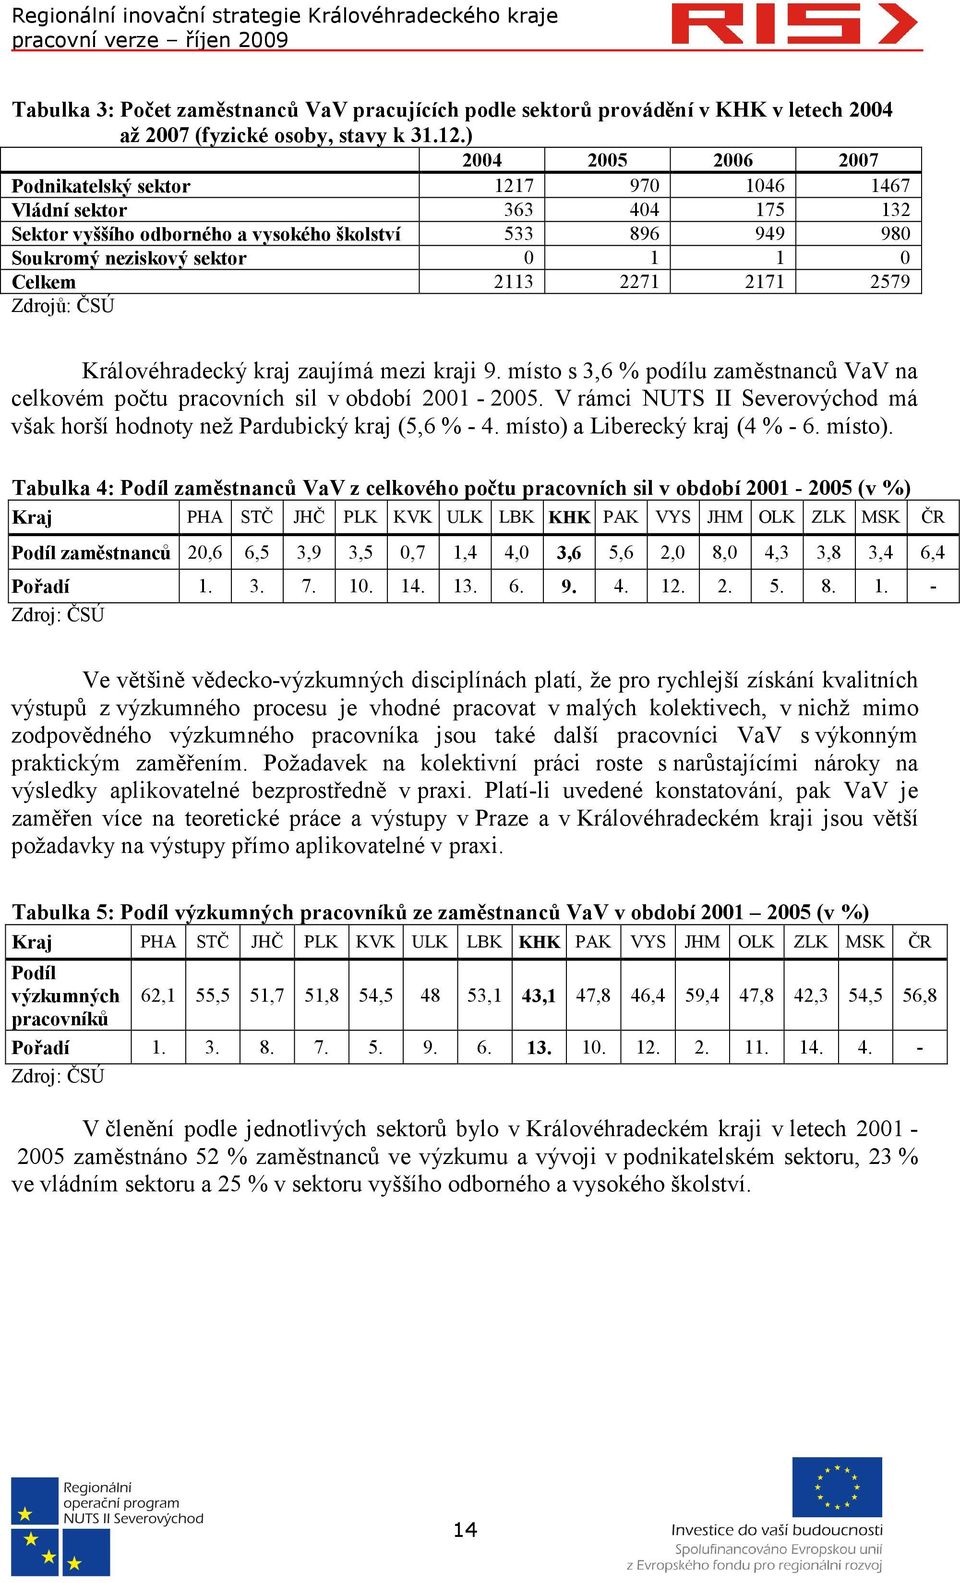 2271 2171 2579 Zdrojů: ČSÚ Královéhradecký kraj zaujímá mezi kraji 9. místo s 3,6 % podílu zaměstnanců VaV na celkovém počtu pracovních sil v období 2001-2005.